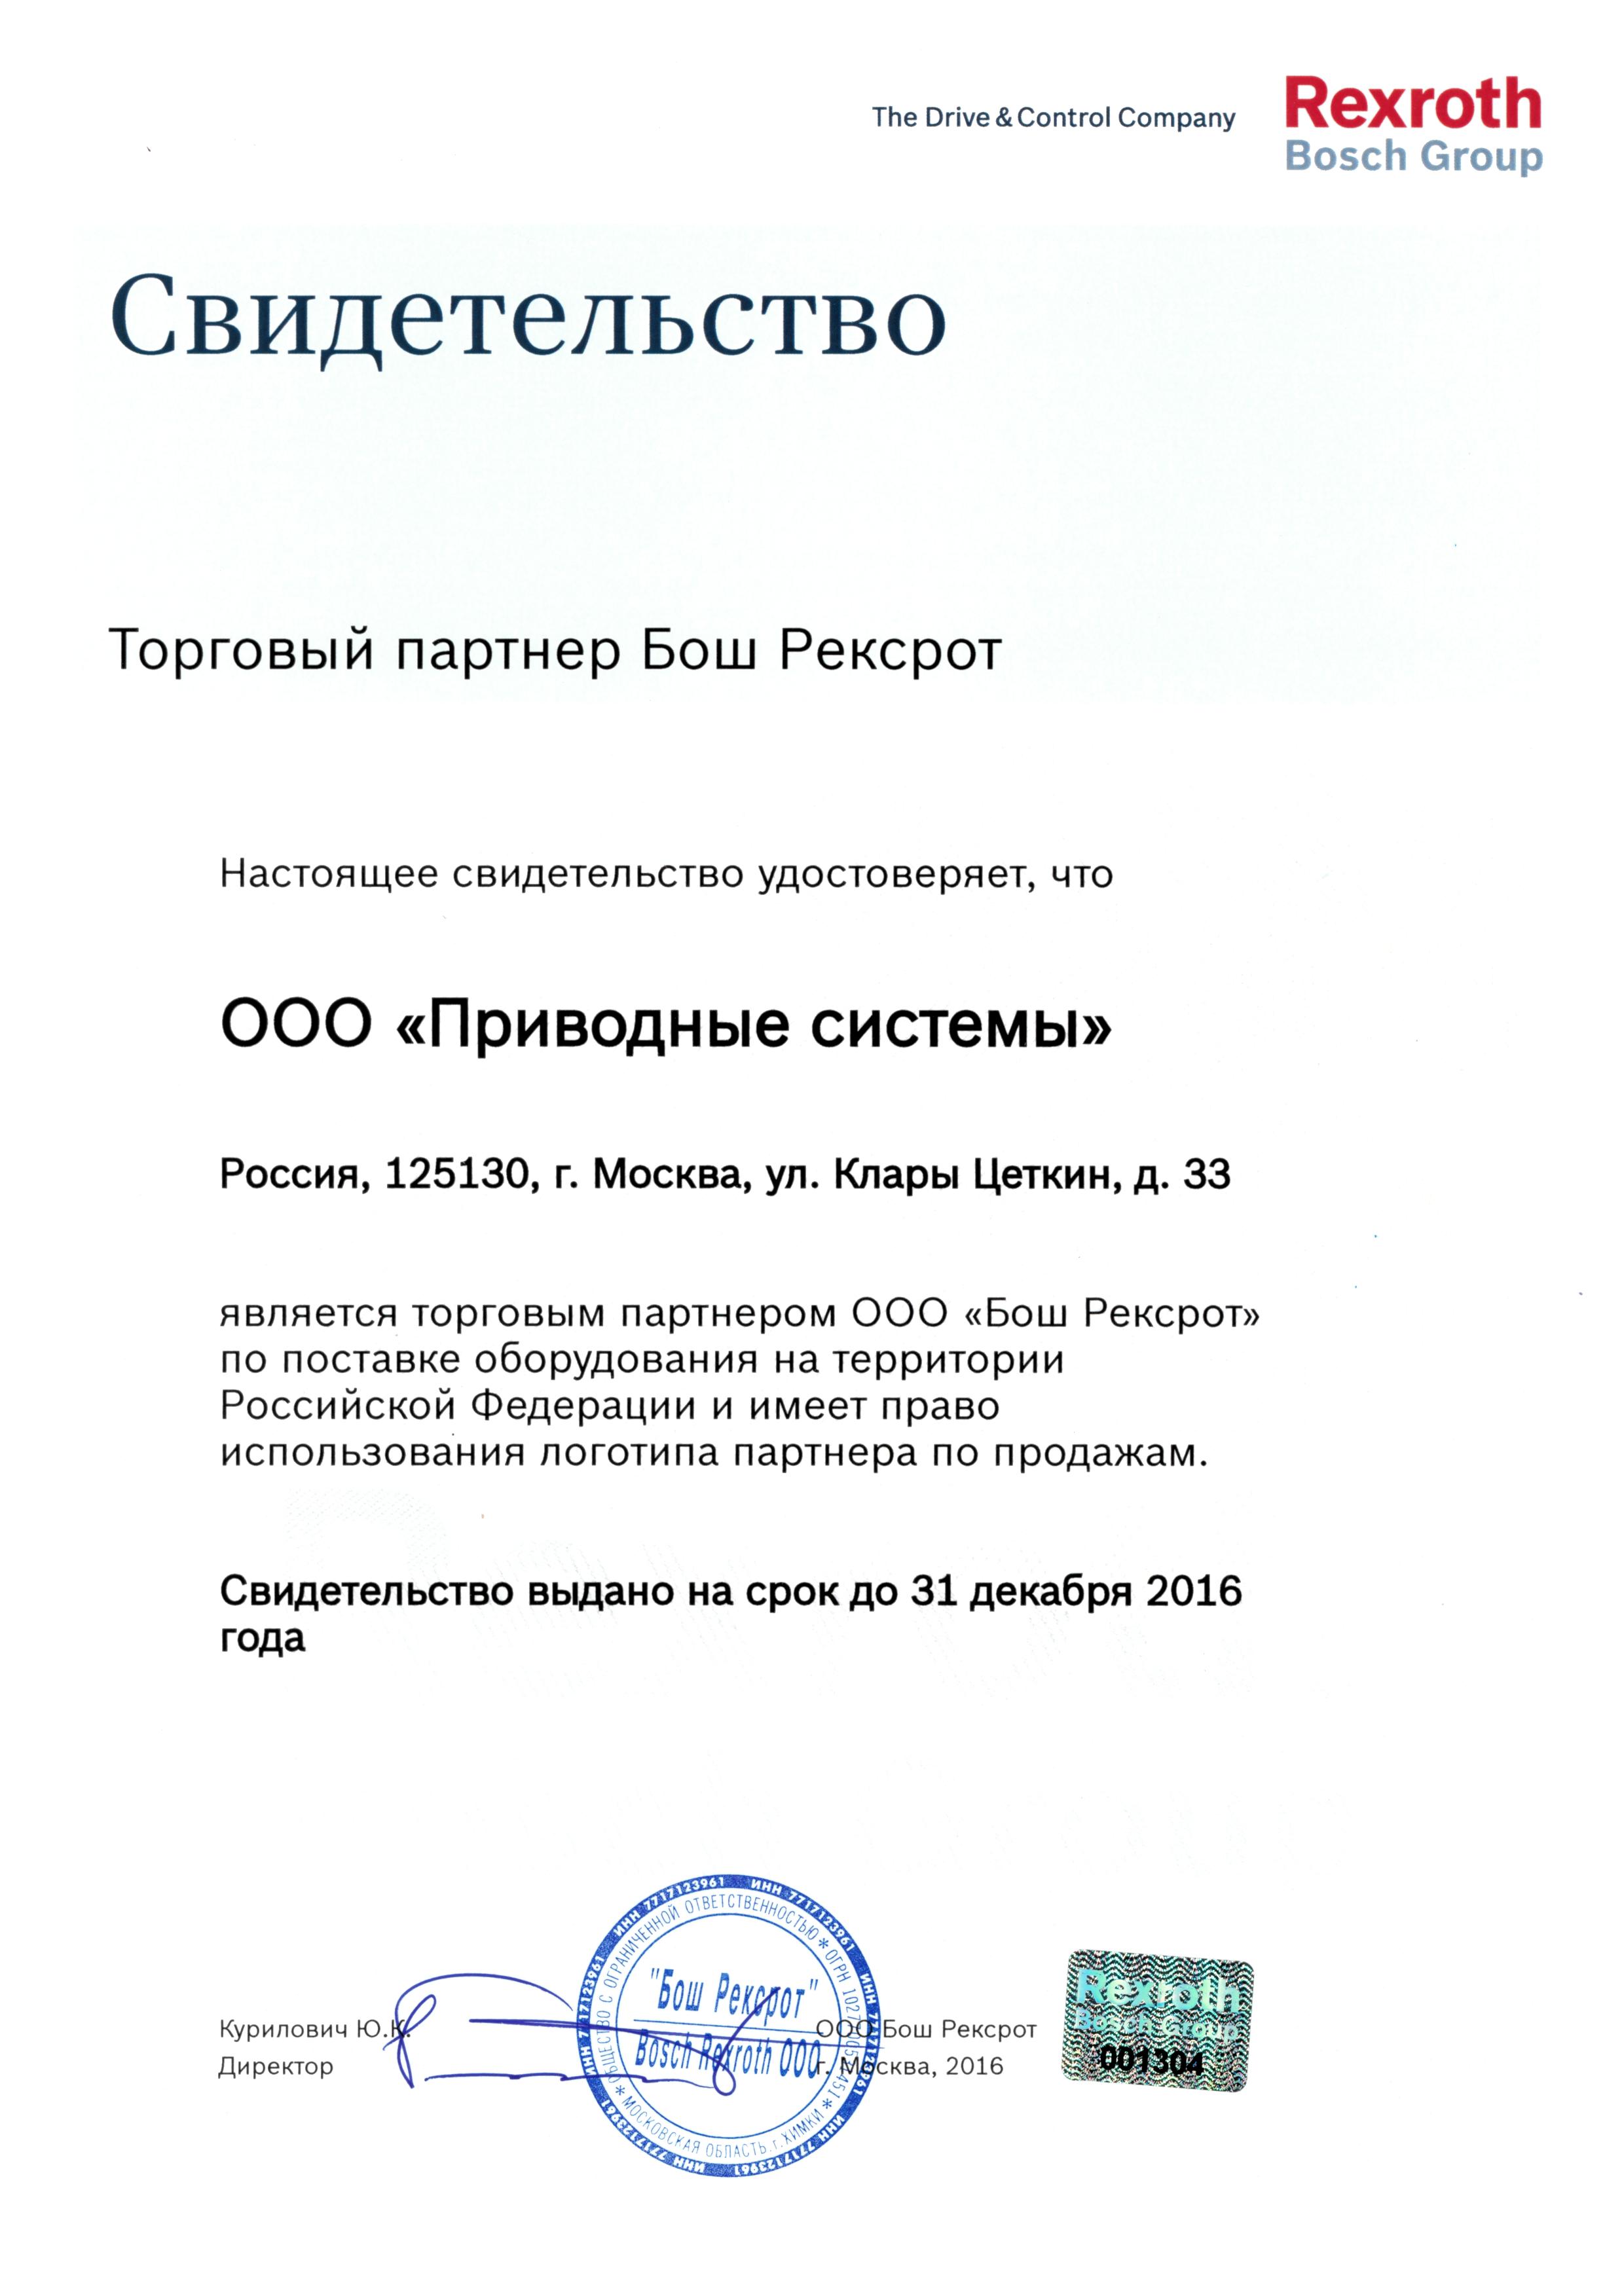 Сертификат партнера Bosch Rexroth